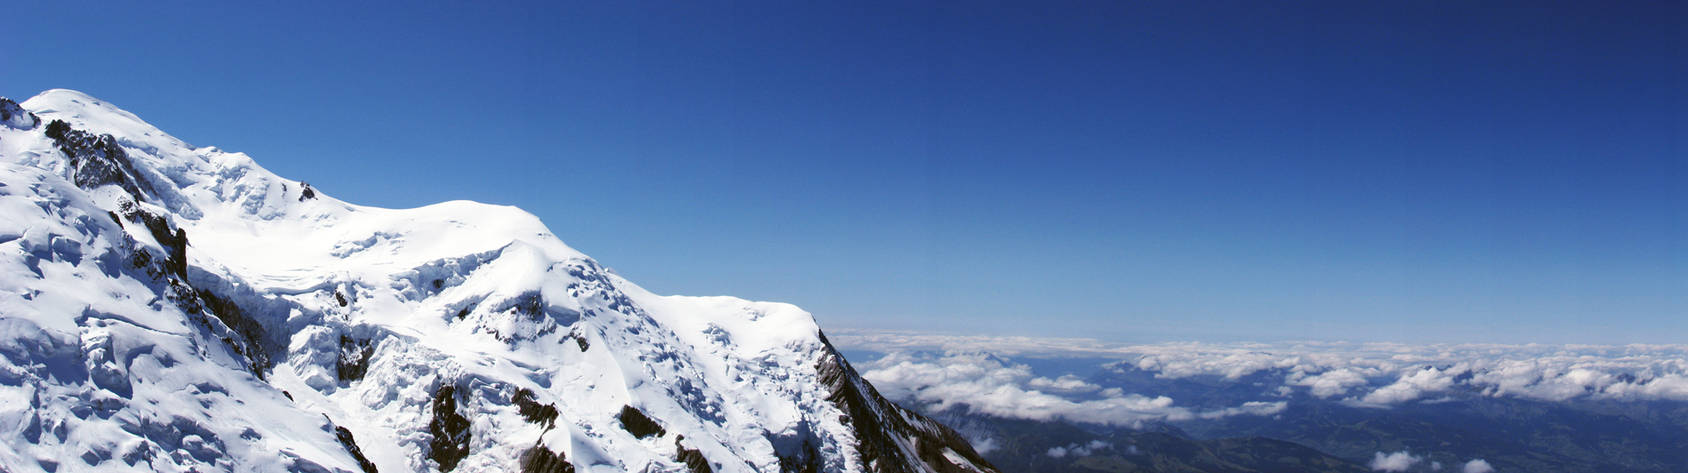 Snowy Panorama